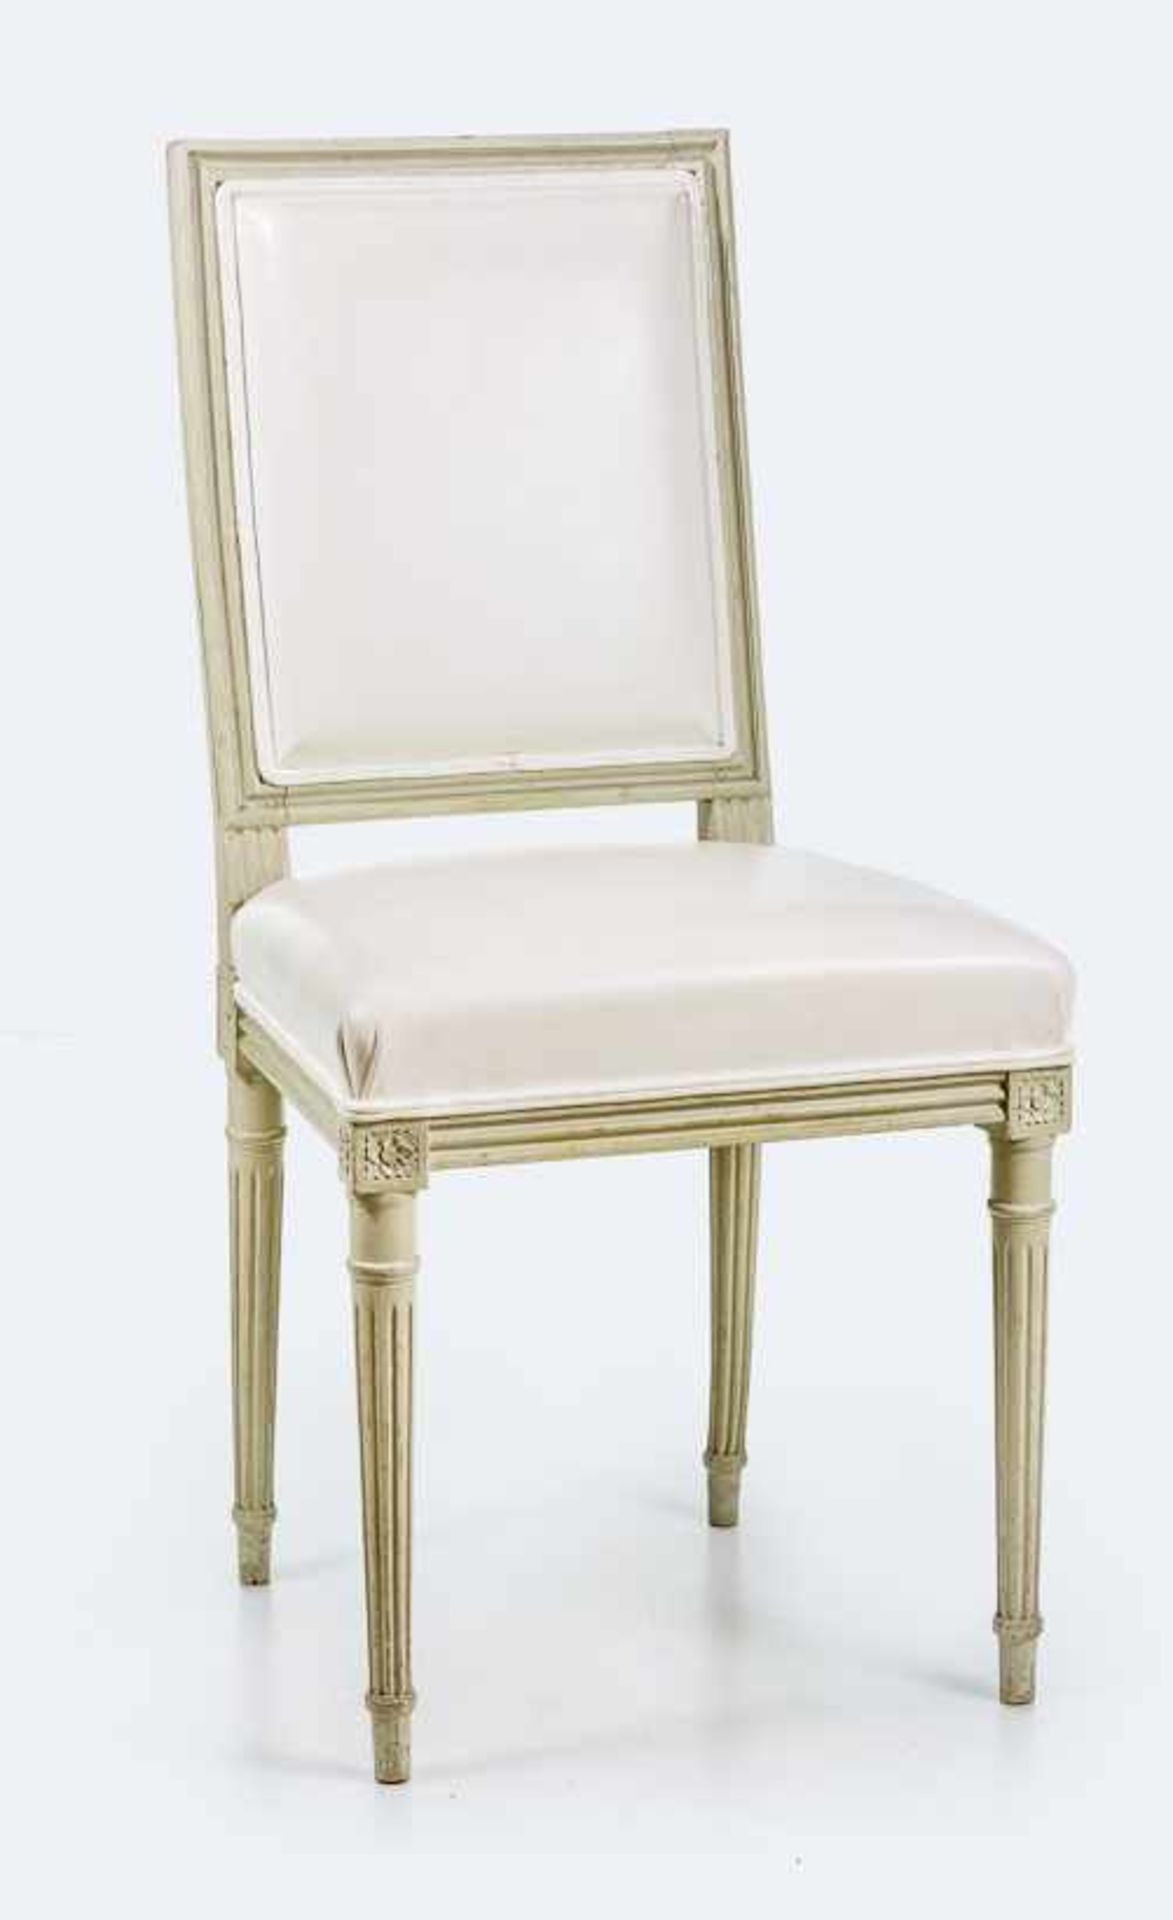 Stuhl im Louis-XVI-Stil. Holz, grau gefasst. Rechteckige, nach hinten gestellte, profilierte